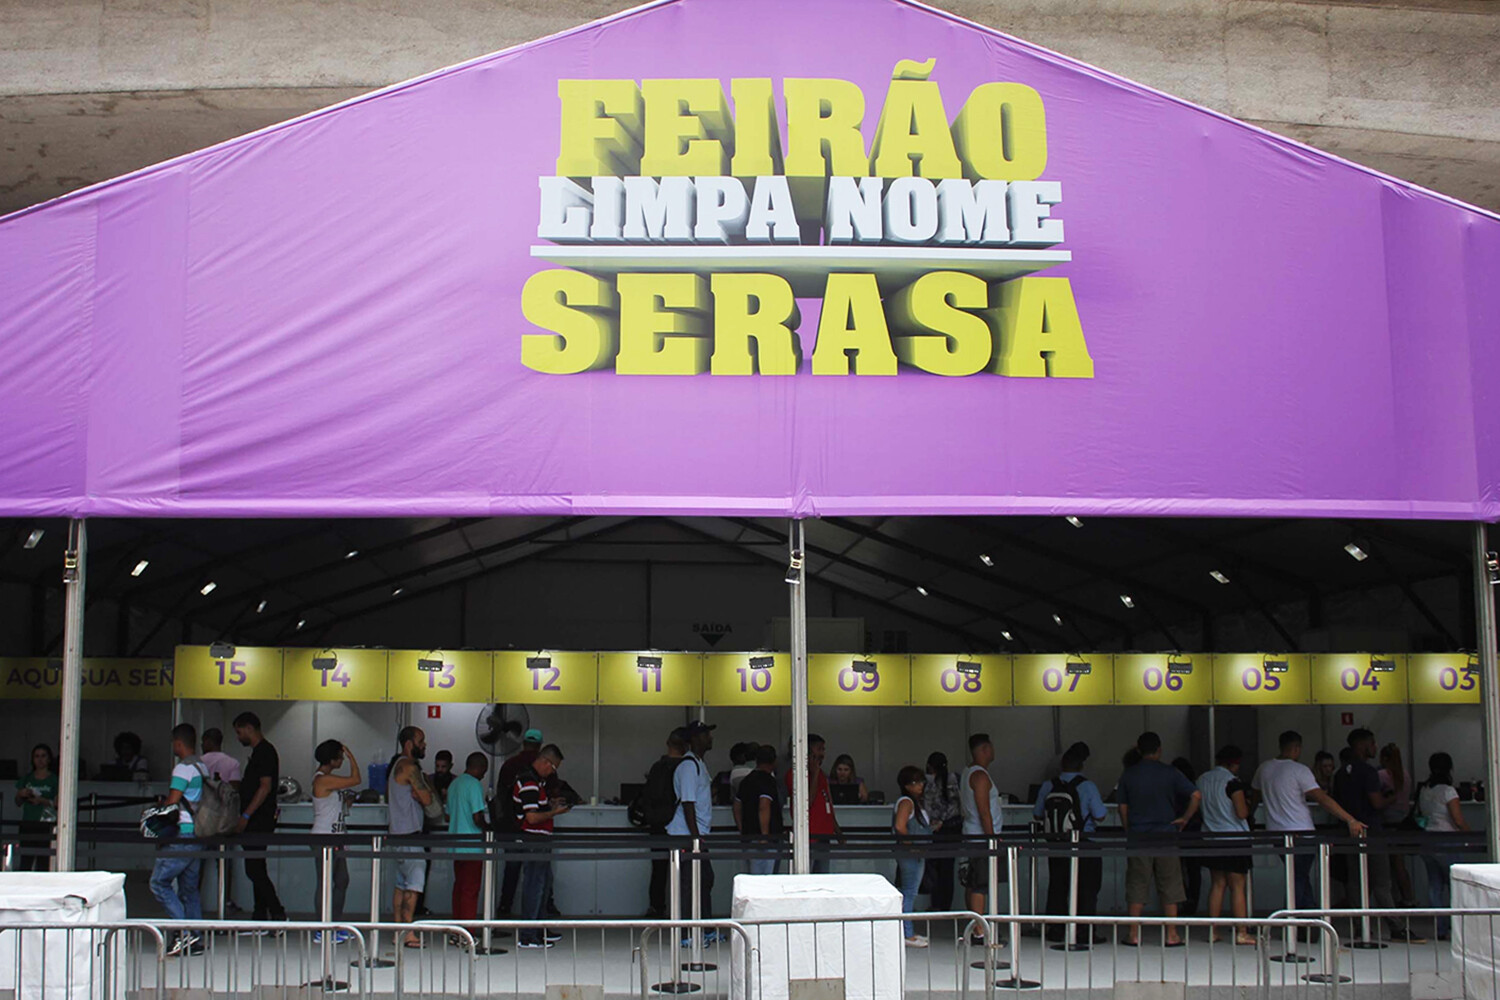 Feirão da Serasa renegocia dívidas com desconto de até 98%